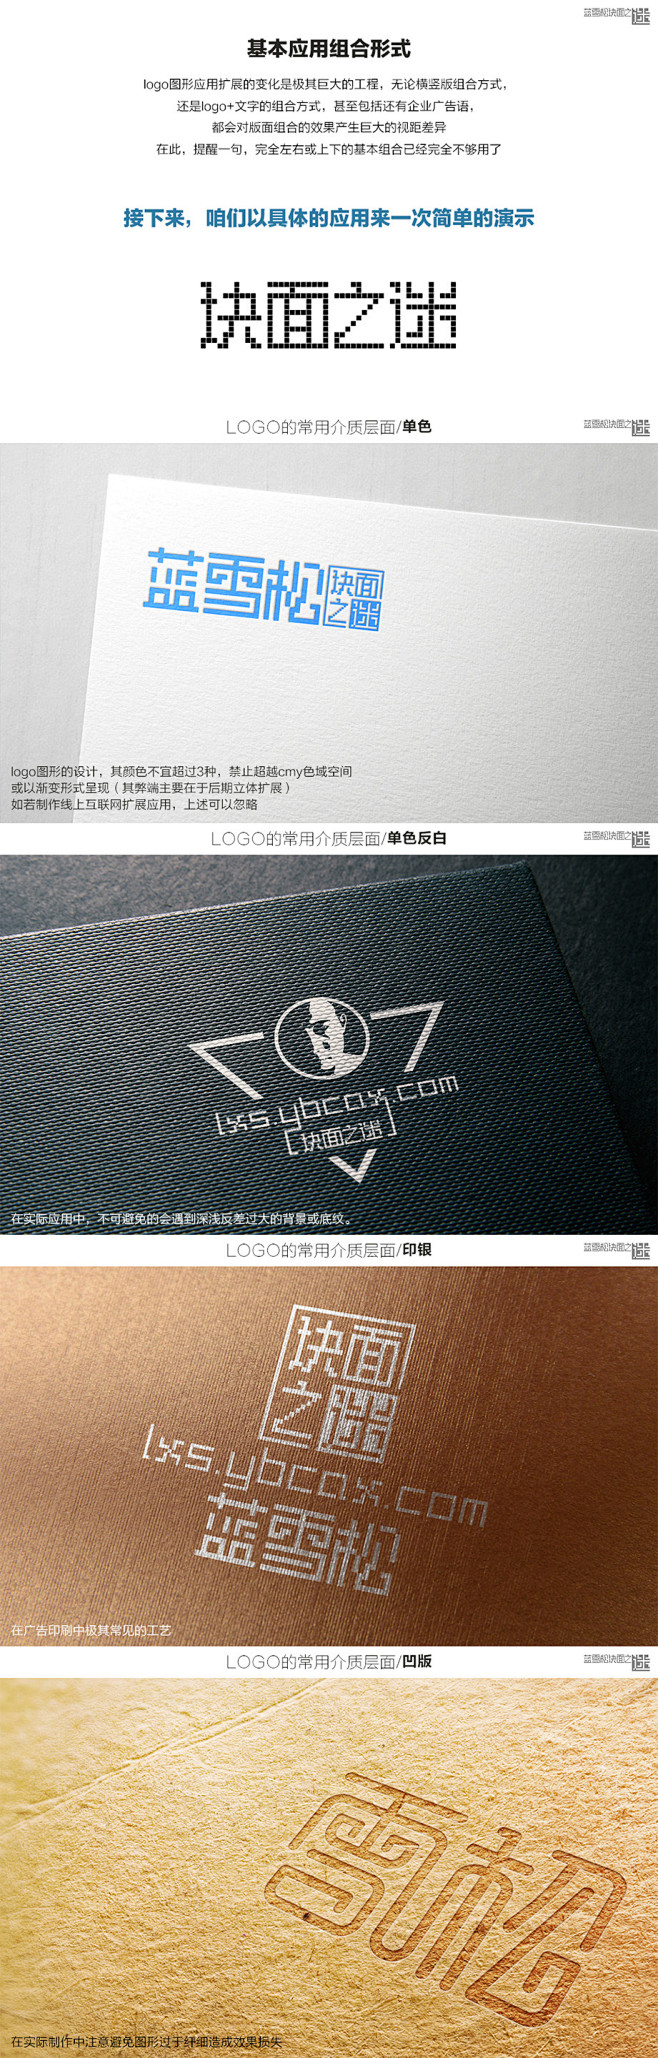 logo设计应用思路_王雪松_68视觉